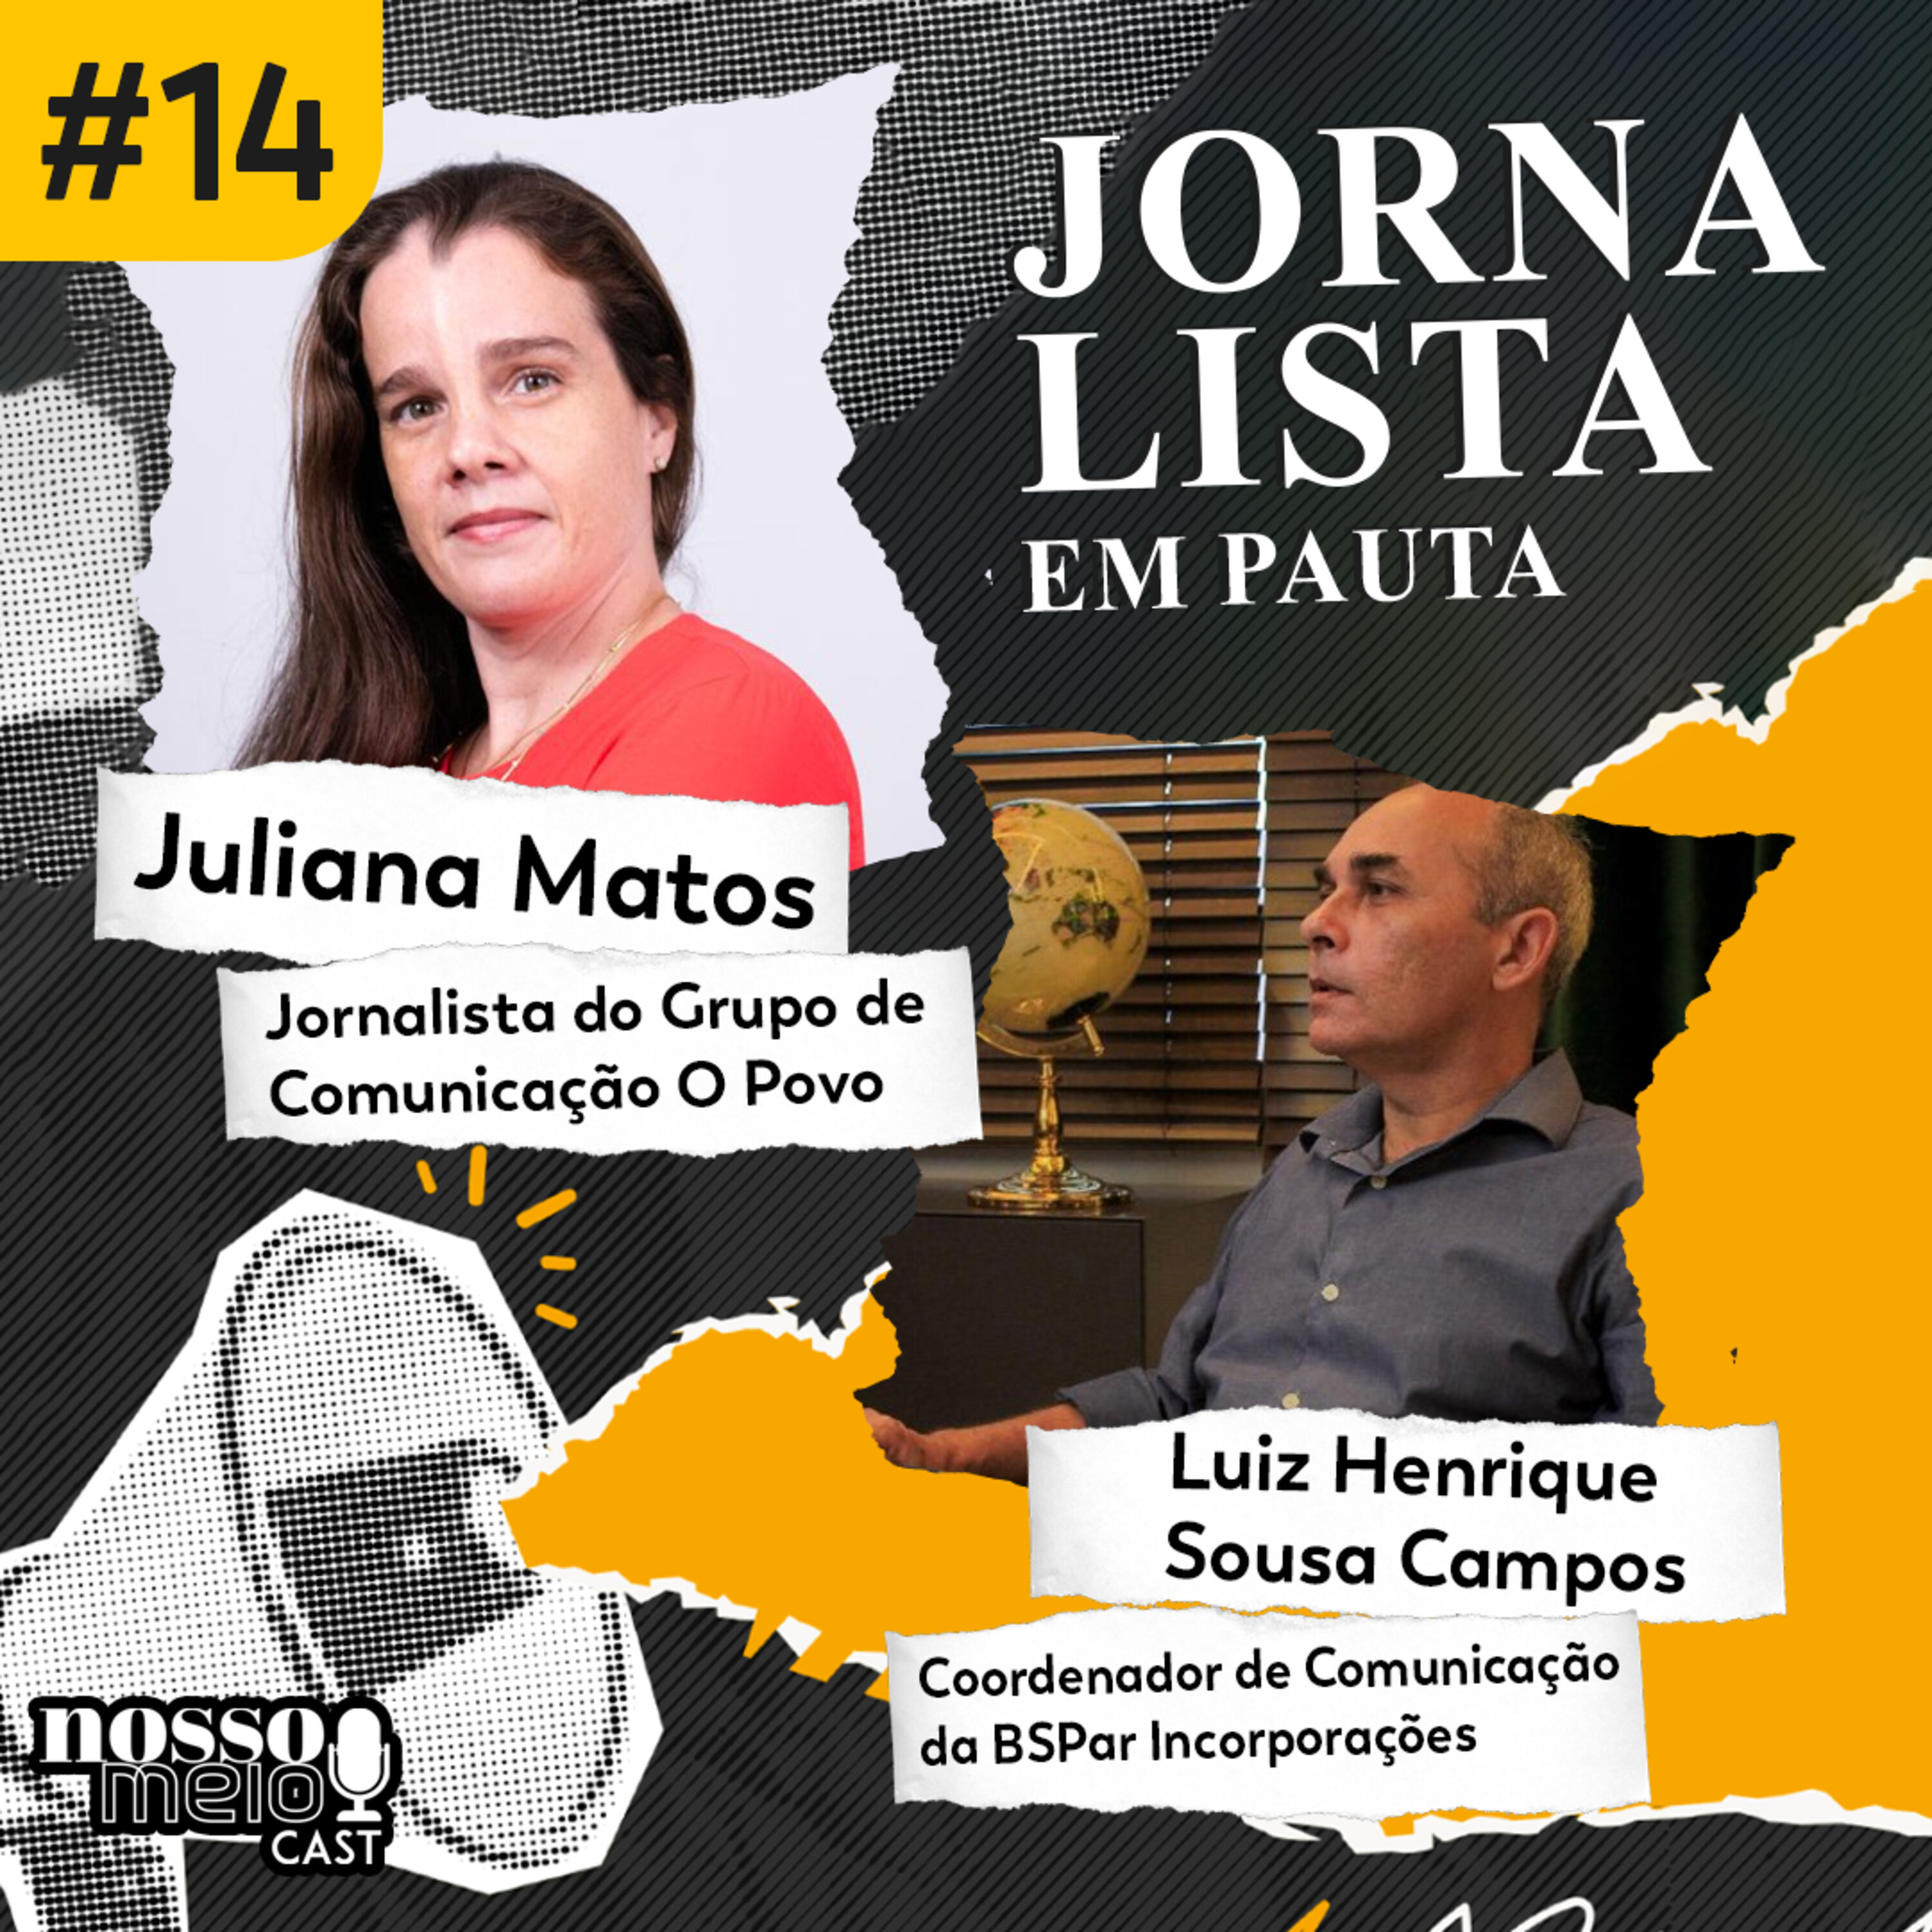 Nosso Meio Cast #14 - Jornalista em Pauta: As grandes coberturas do jornalismo cearense